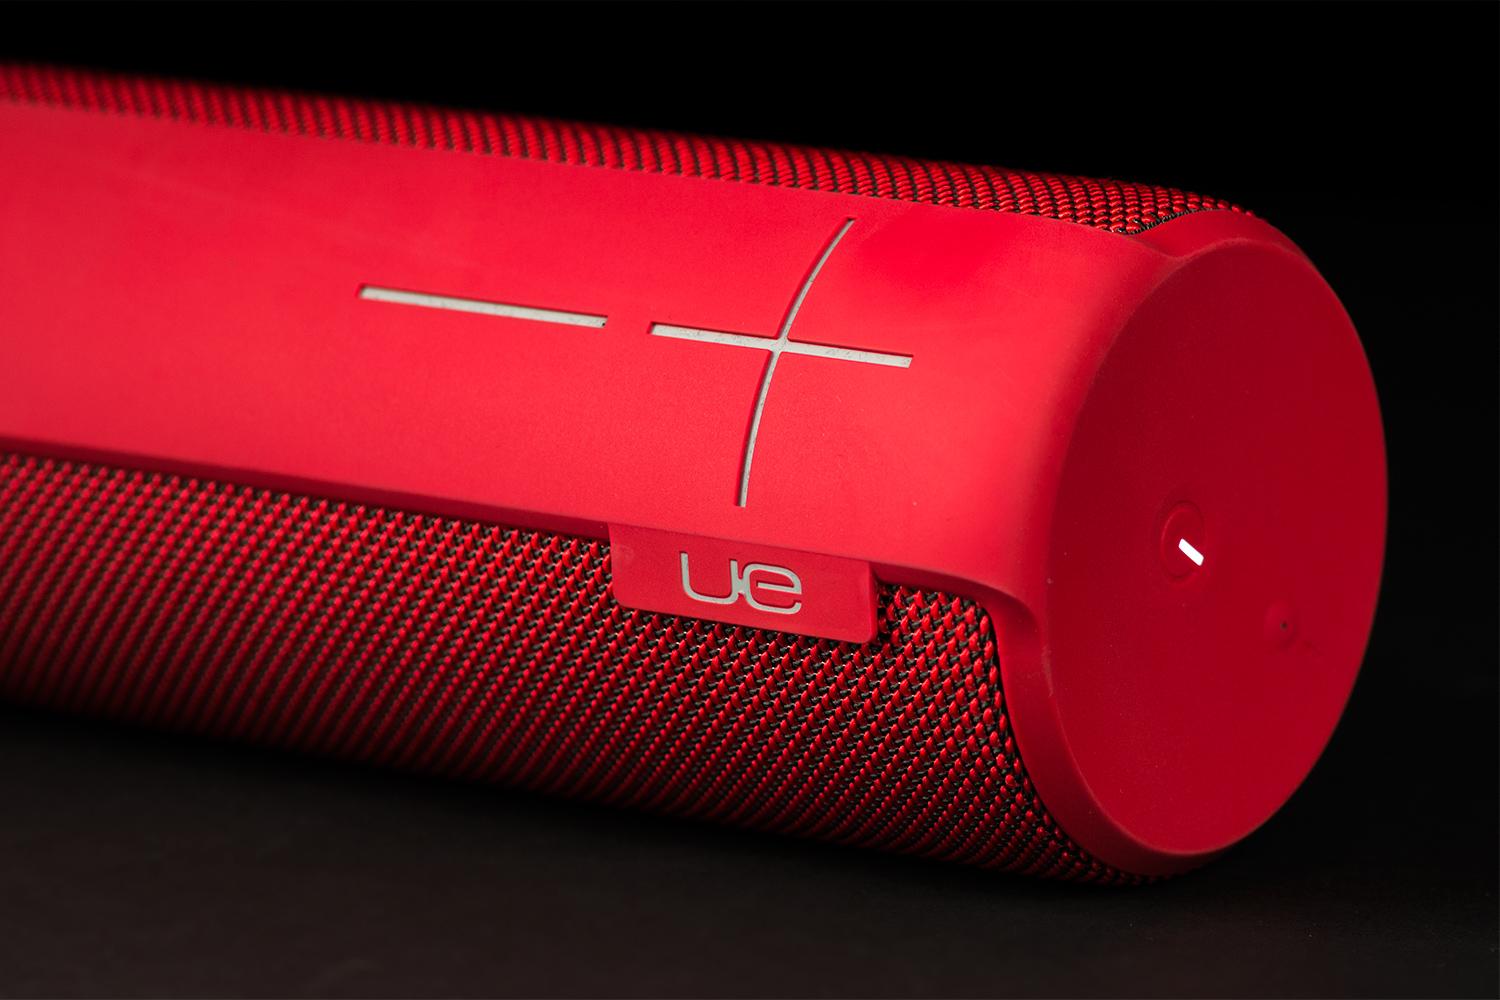 UE Megaboom Ultimate Ears speaker review 2